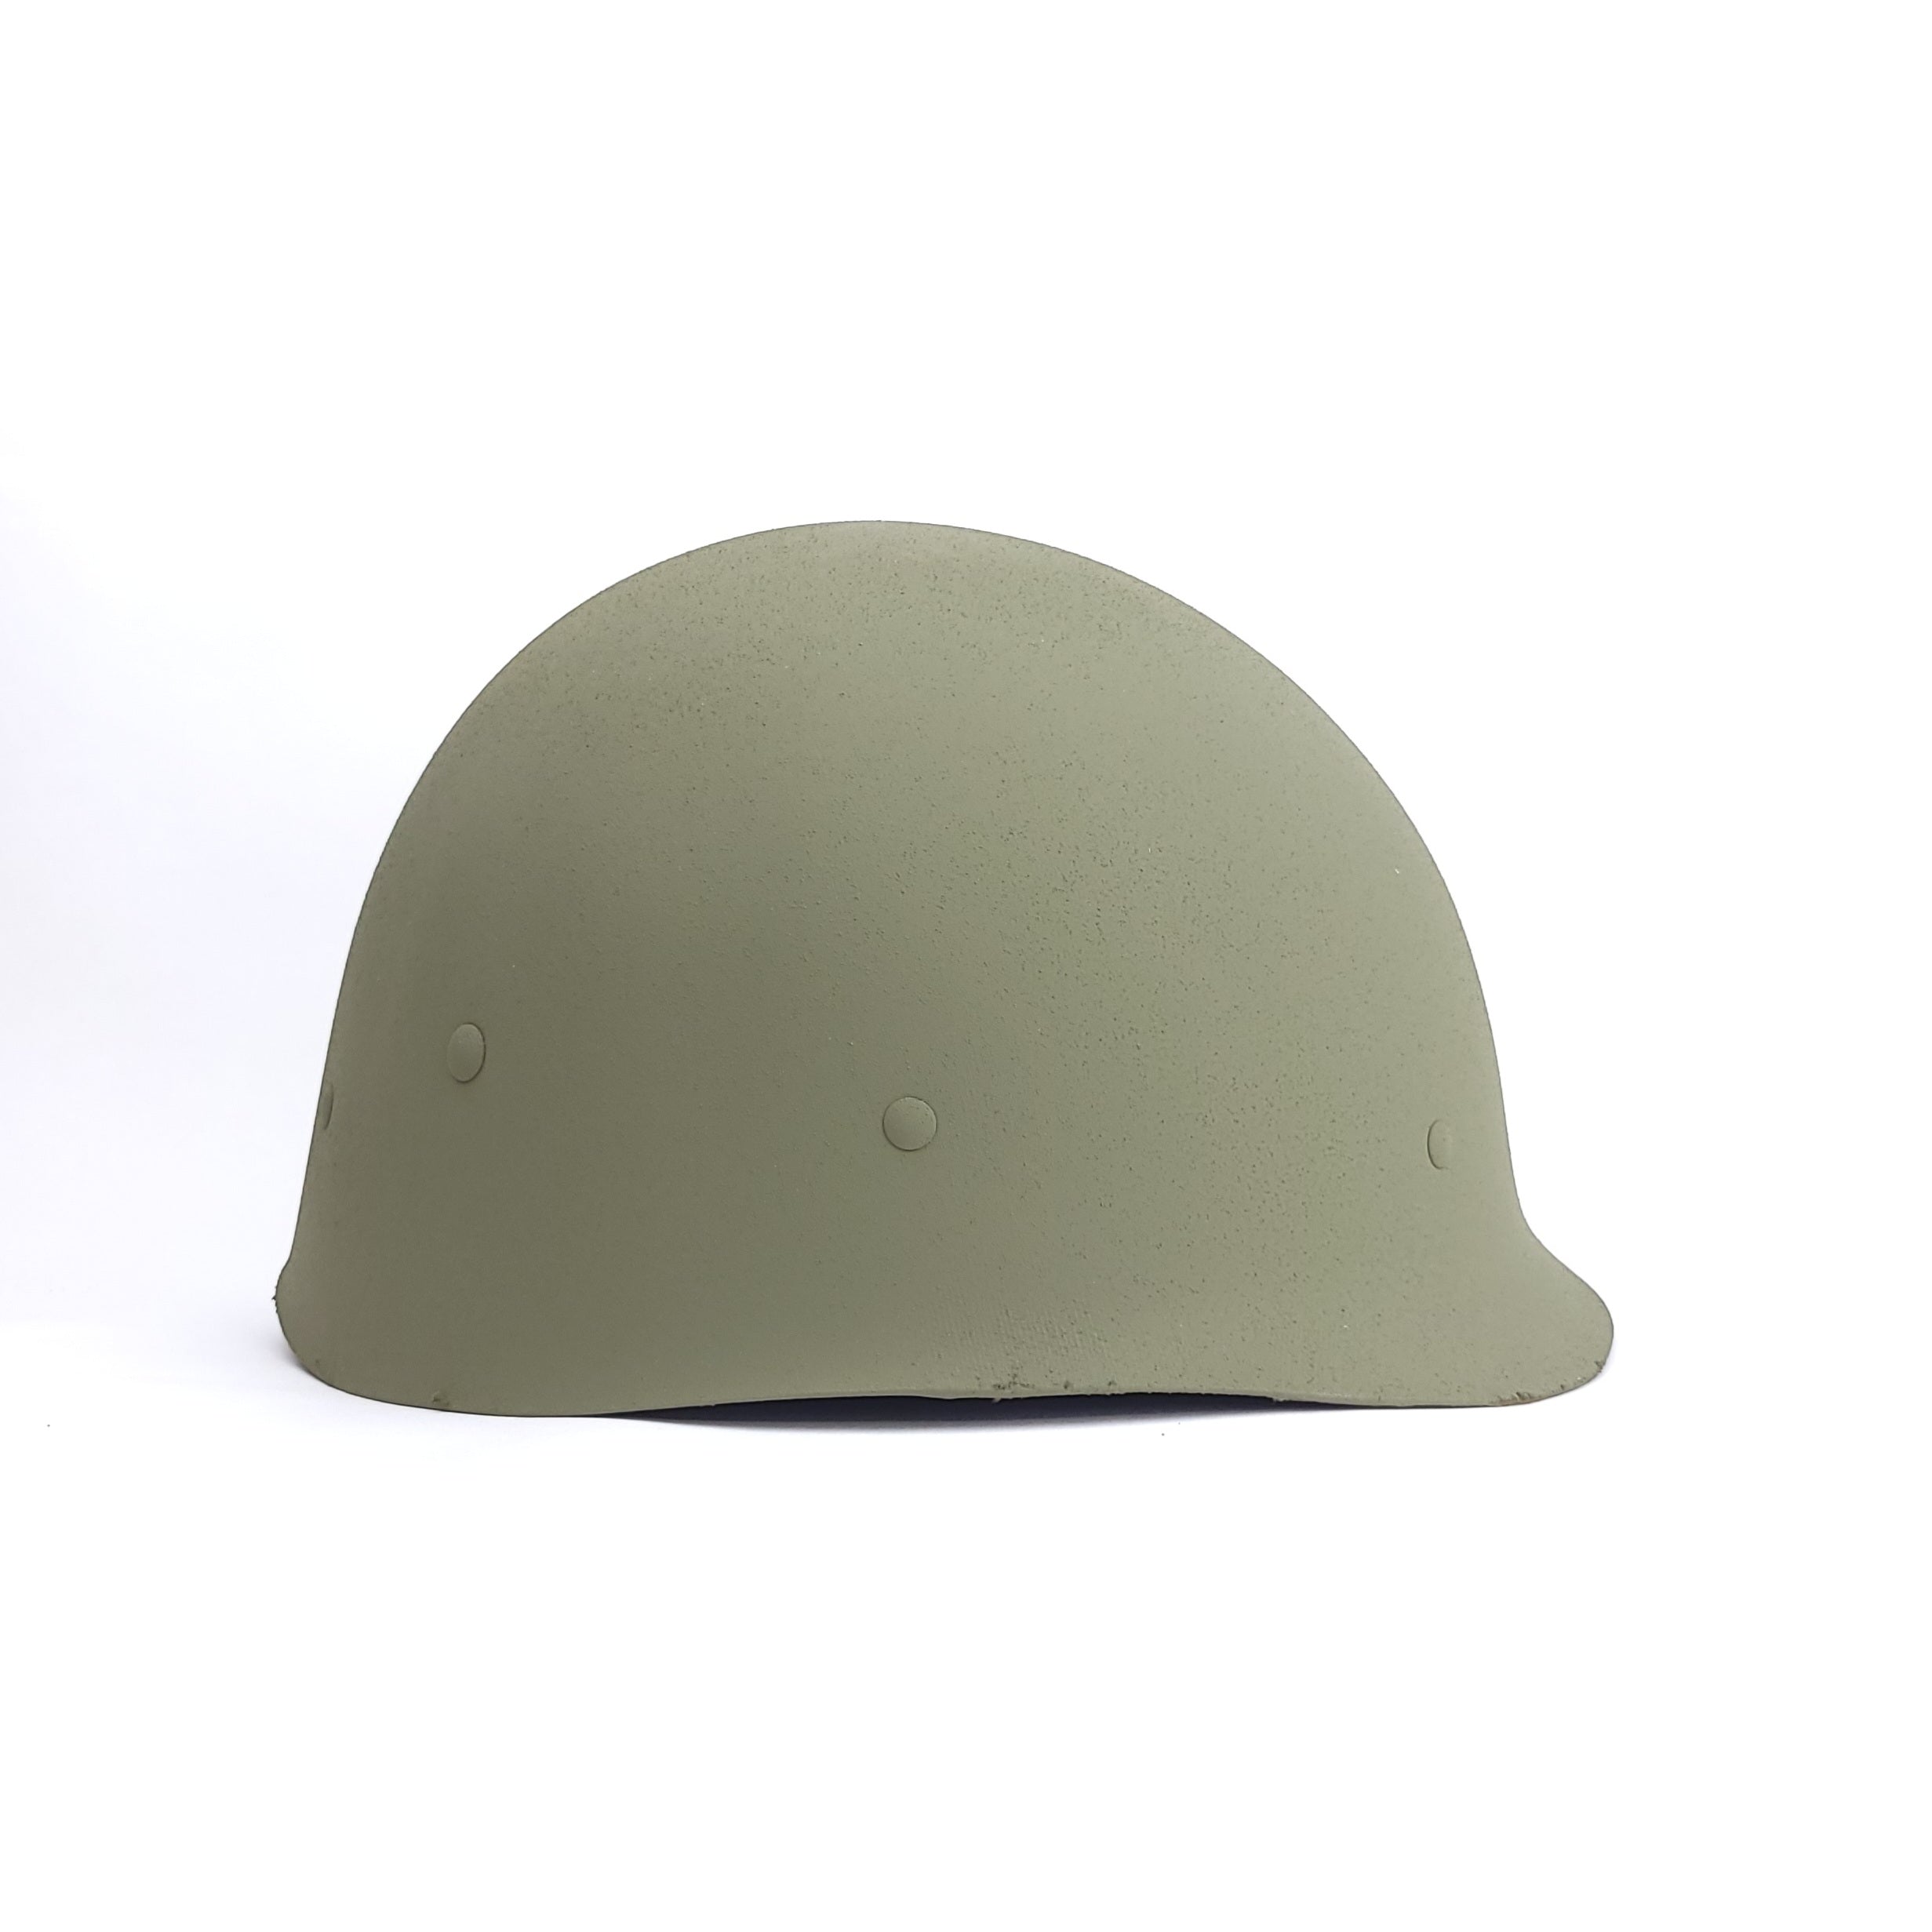 M1 Helmet Liner - Vietnam Era Type I Infantry - Mid War